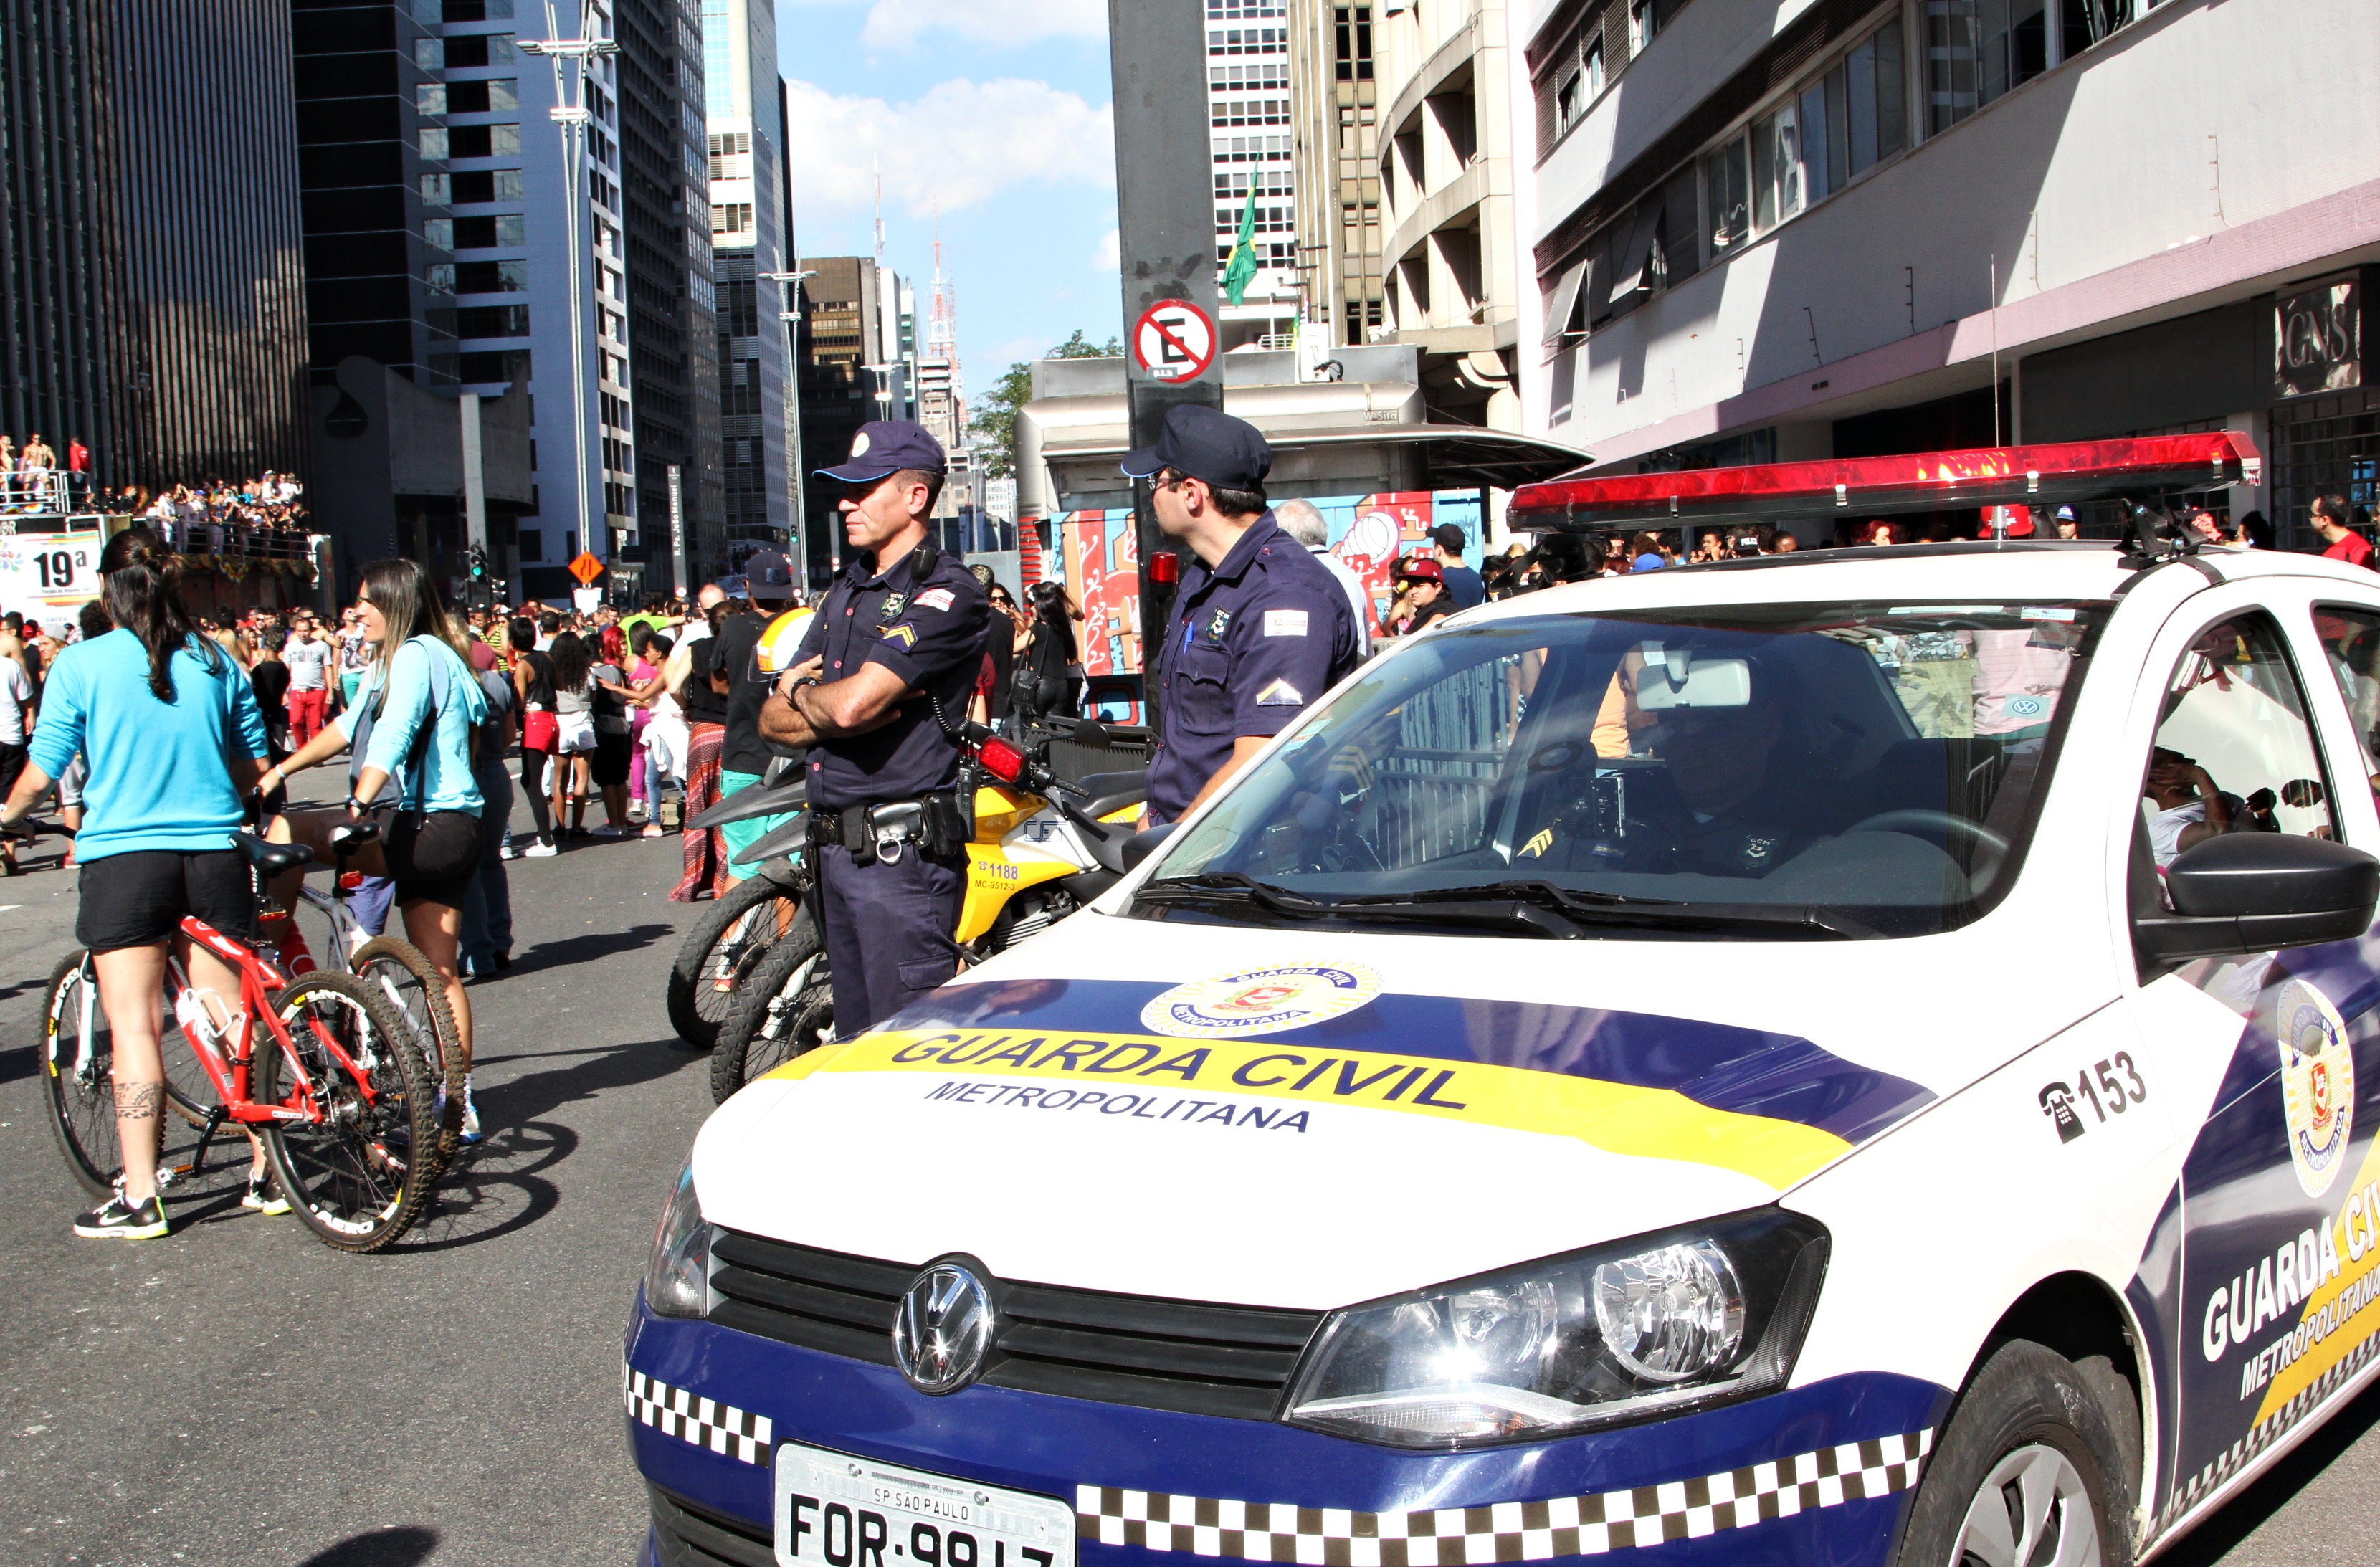 #PraCegoVEr- Guardas Civis , de azul, ao lado da viatura fazem a segurança dos cidadãos